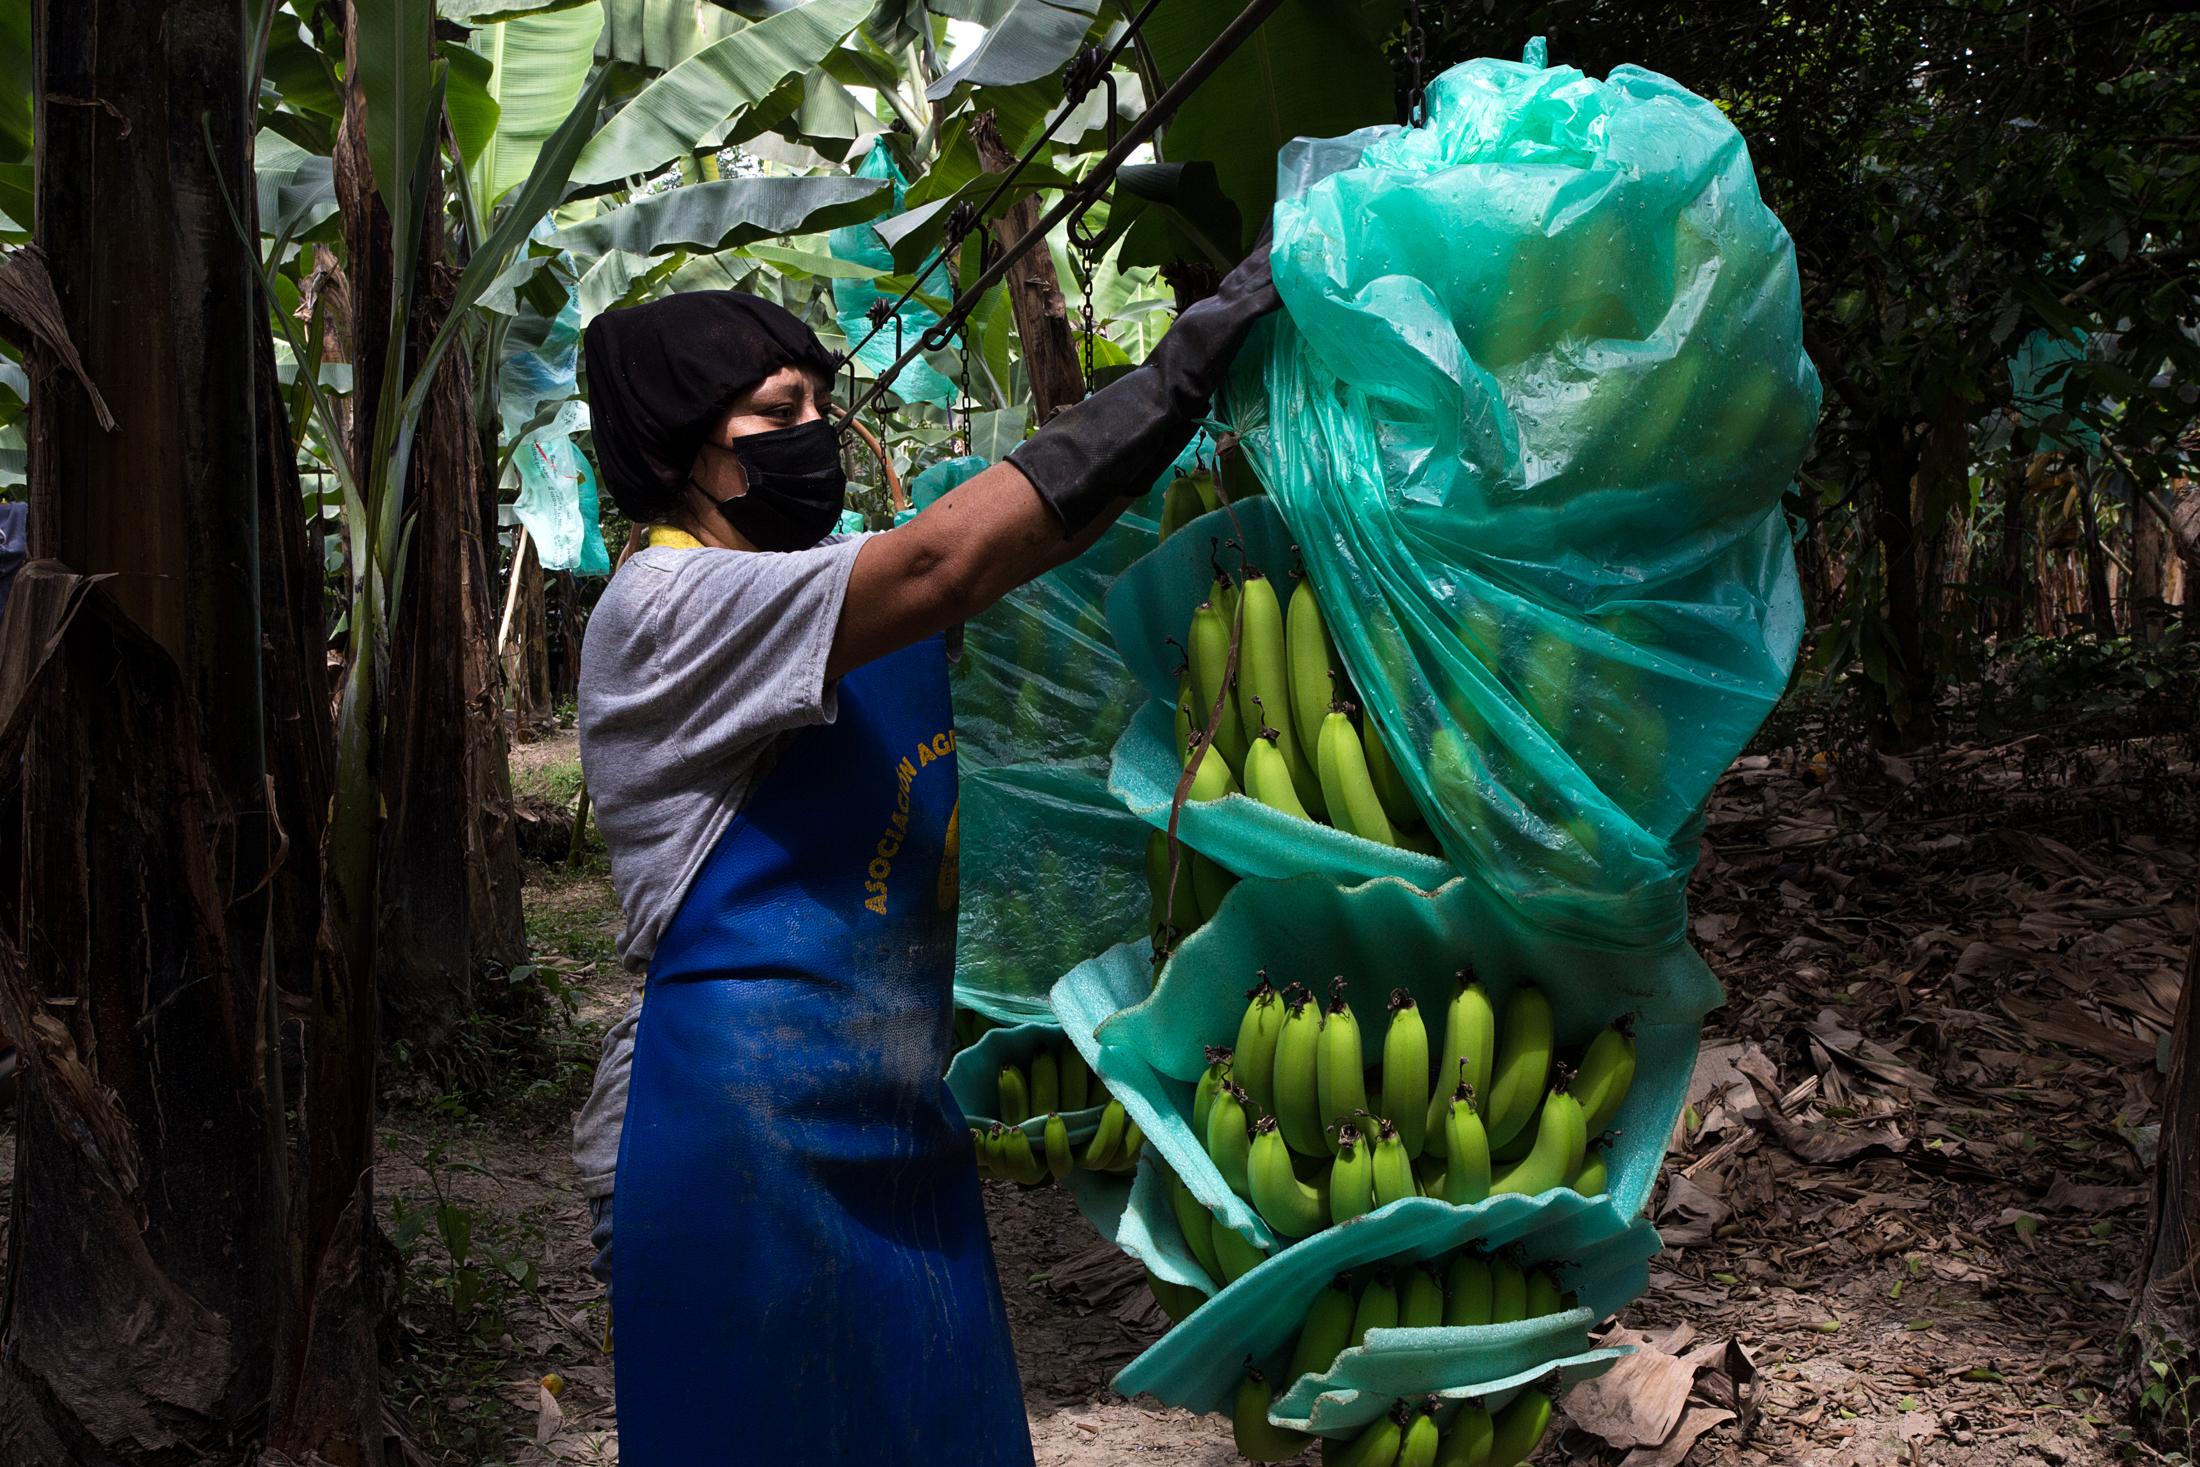 Banana cultivation in Ecuador - Proceso decorte y selección del banano en la finca...